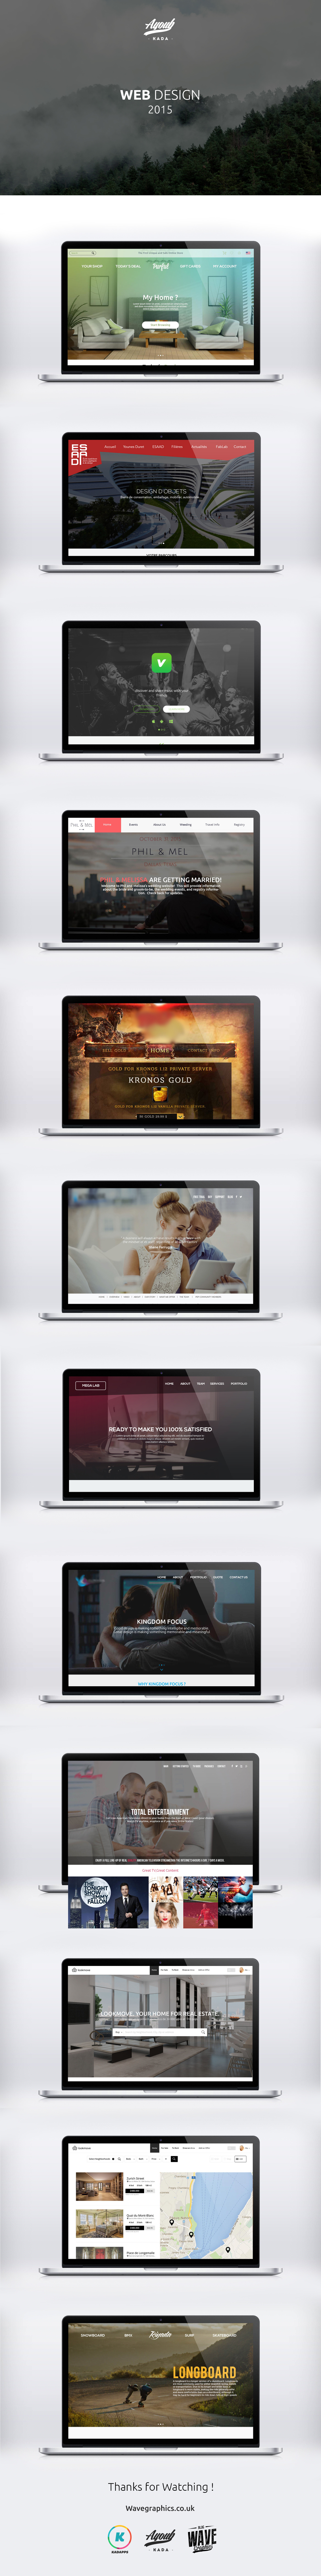 UI ux design Porfolio Web dashboard 2015 work folio Website Designs freelancer